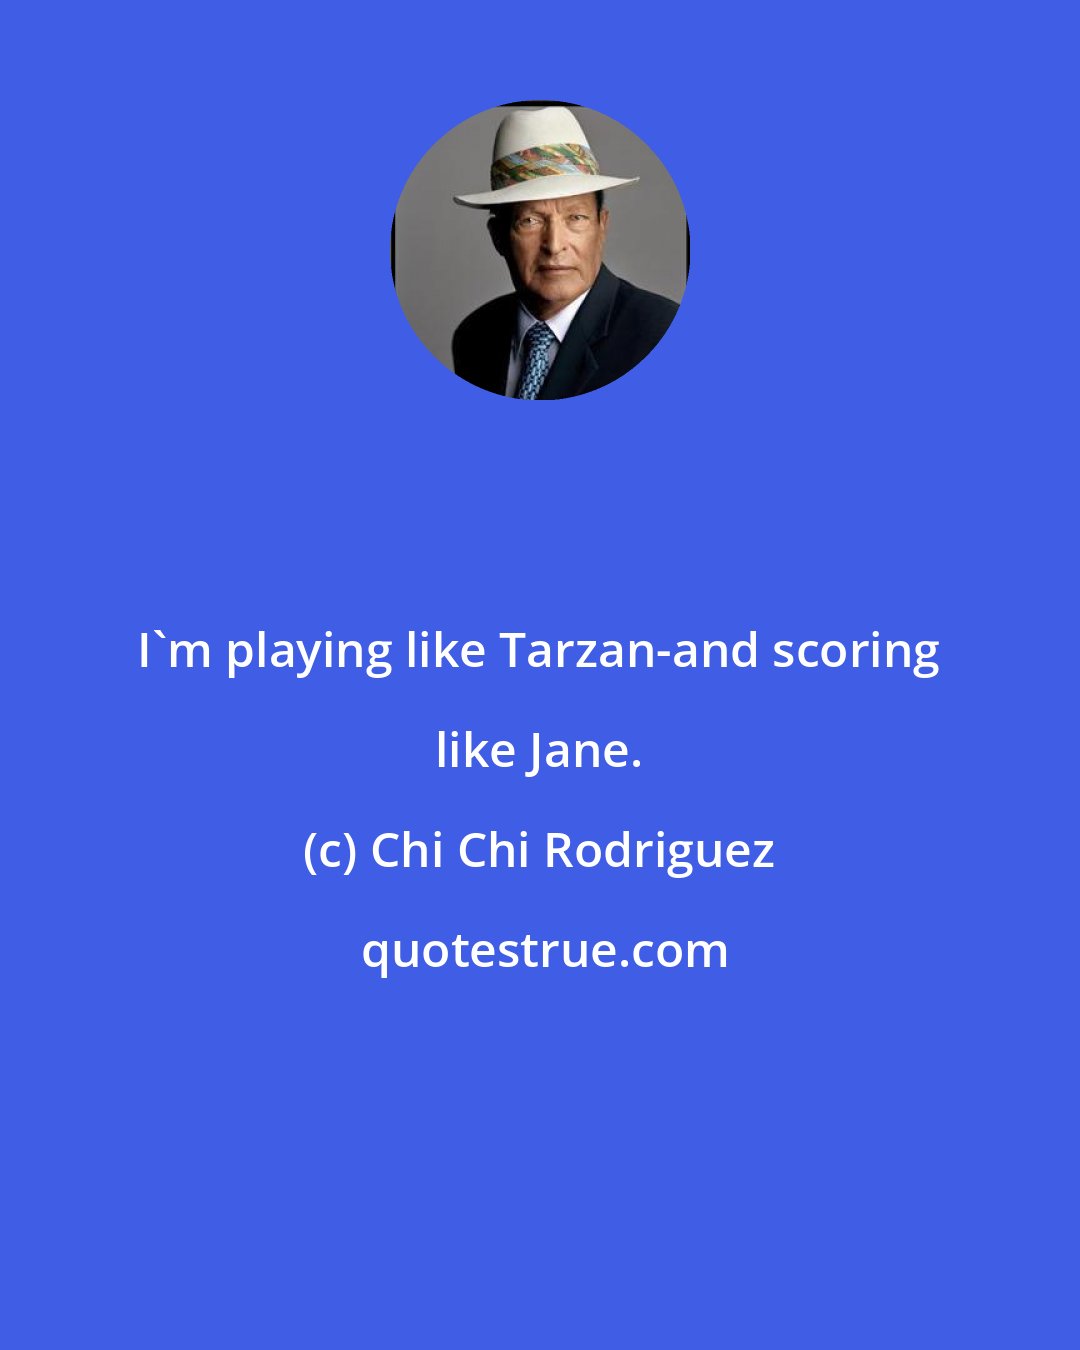 Chi Chi Rodriguez: I'm playing like Tarzan-and scoring like Jane.